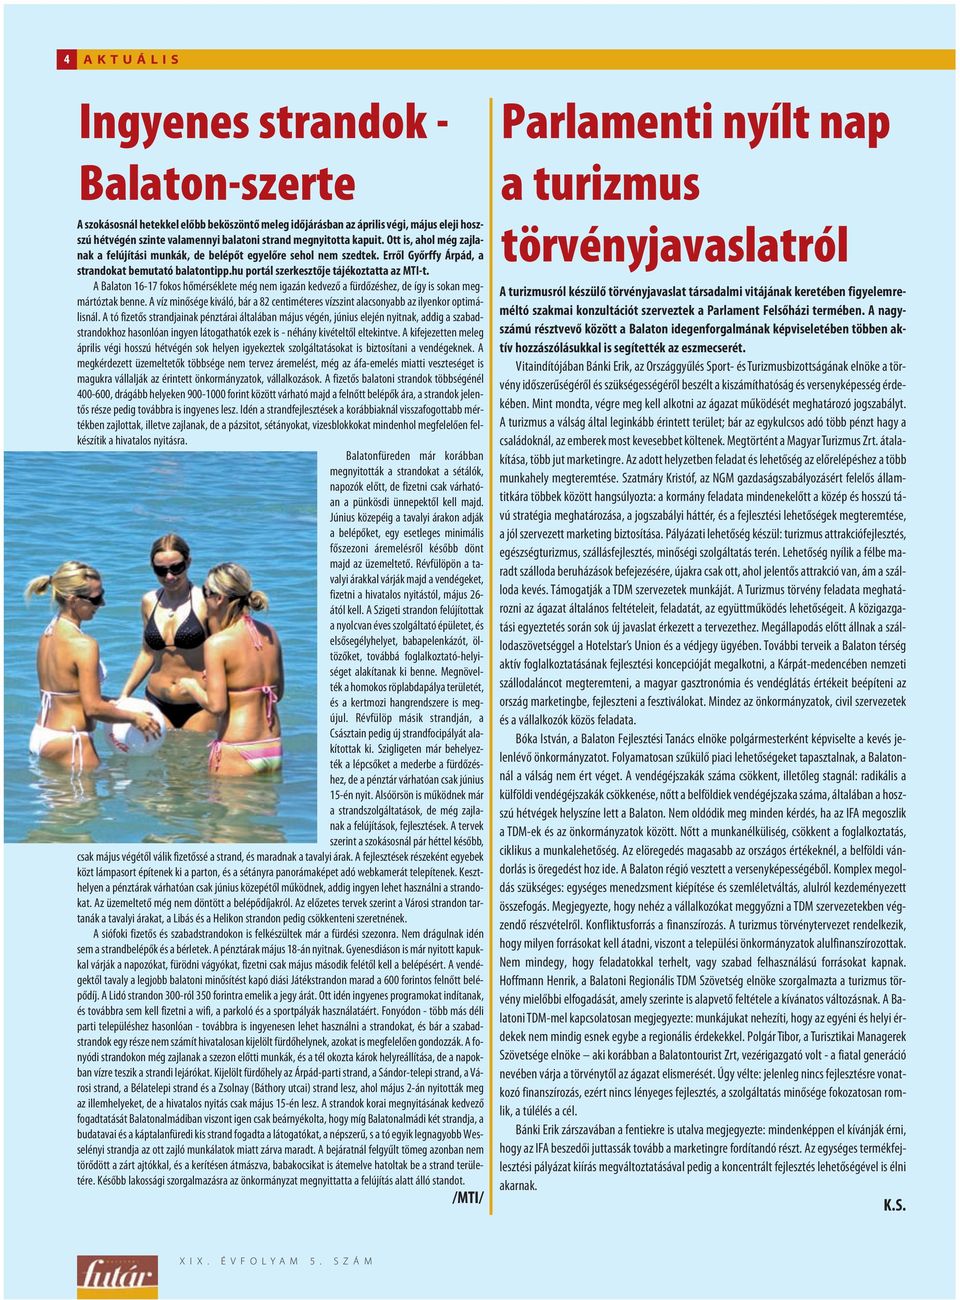 A Balaton 16-17 fokos hõmérséklete még nem igazán kedvezõ a fürdõzéshez, de így is sokan megmártóztak benne. A víz minõsége kiváló, bár a 82 centiméteres vízszint alacsonyabb az ilyenkor optimálisnál.